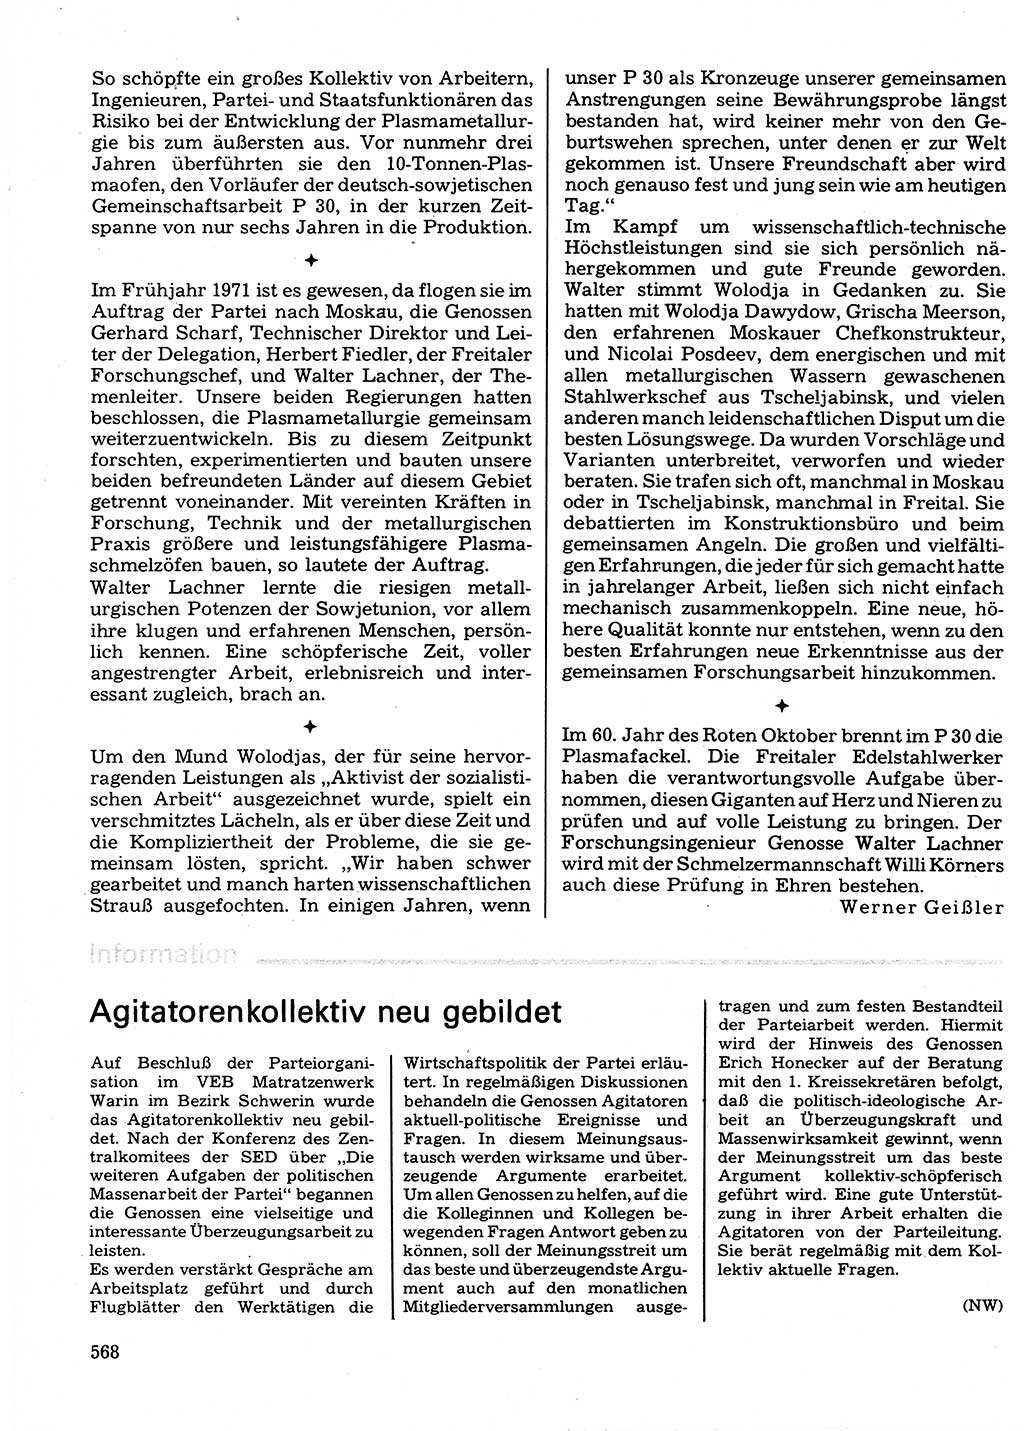 Neuer Weg (NW), Organ des Zentralkomitees (ZK) der SED (Sozialistische Einheitspartei Deutschlands) für Fragen des Parteilebens, 32. Jahrgang [Deutsche Demokratische Republik (DDR)] 1977, Seite 568 (NW ZK SED DDR 1977, S. 568)